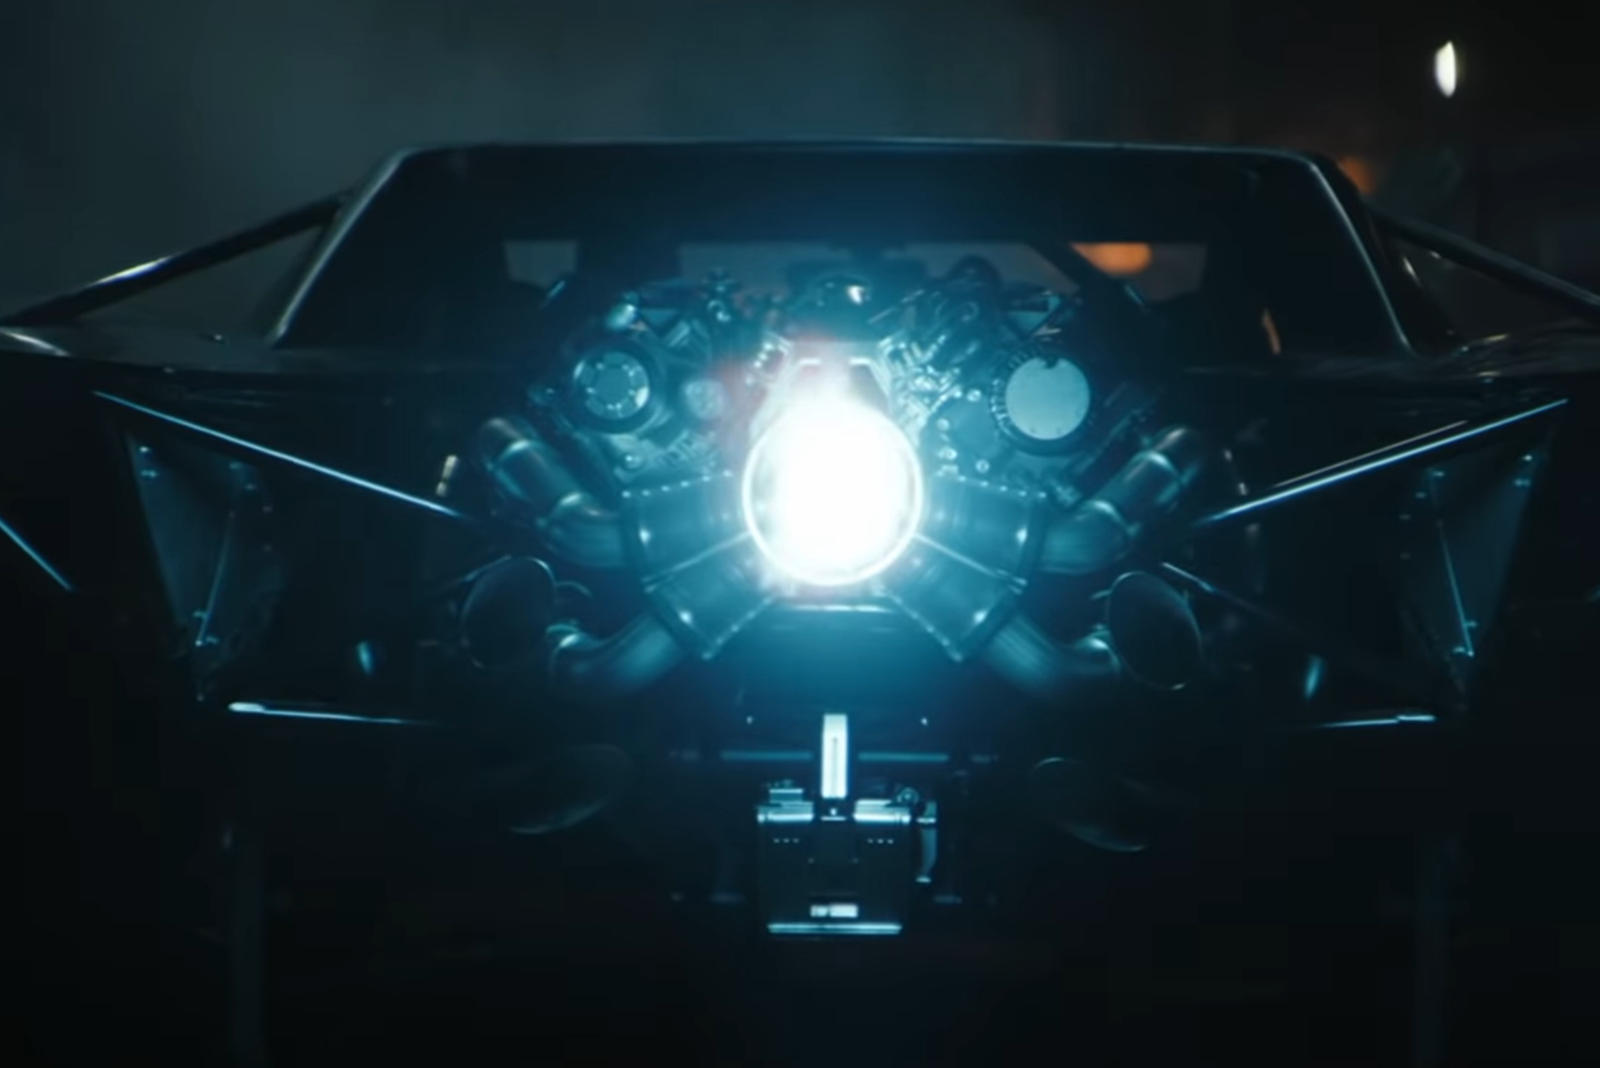 سيارة باتموبيل الجديدة تظهر في إعلان فيلم باتمان القادم 25